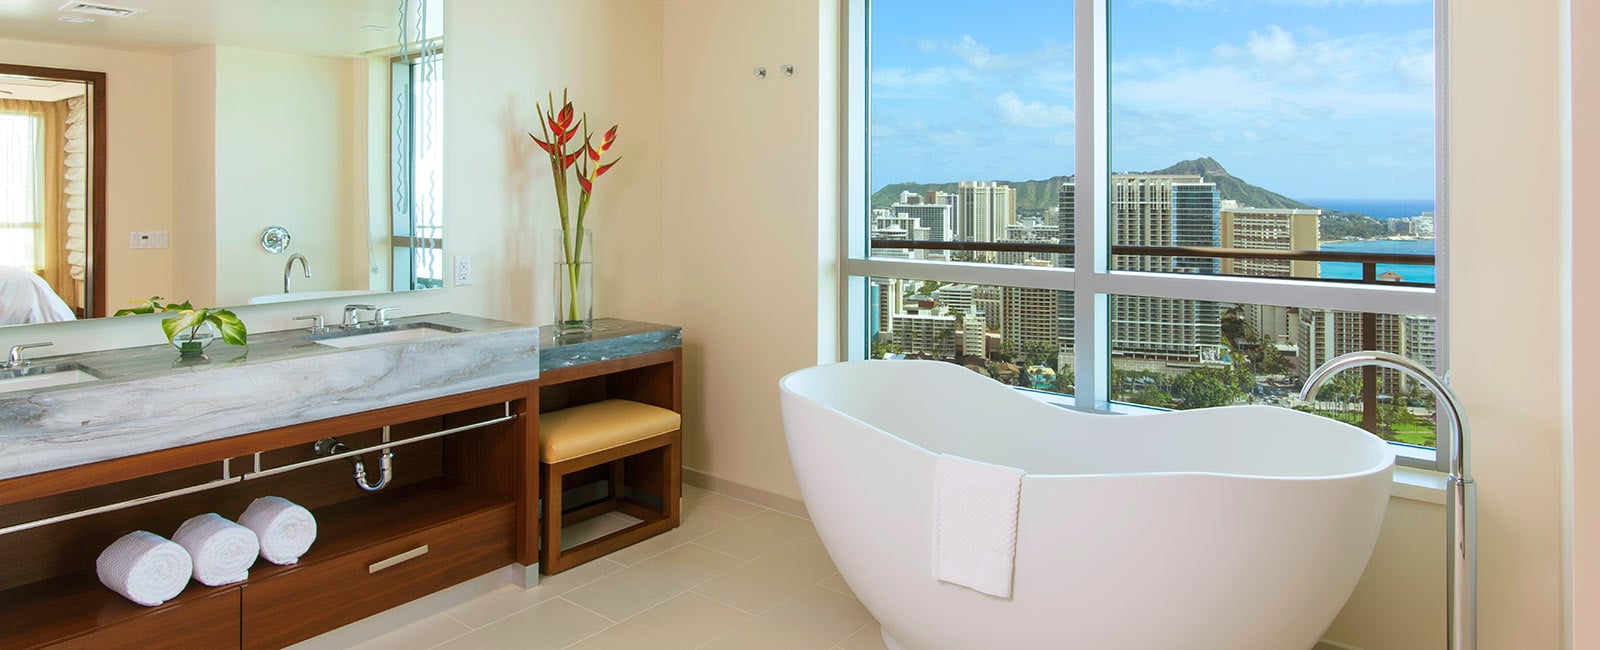 Bathroom at Grand Waikikian Resort in Honolulu, Hawaii